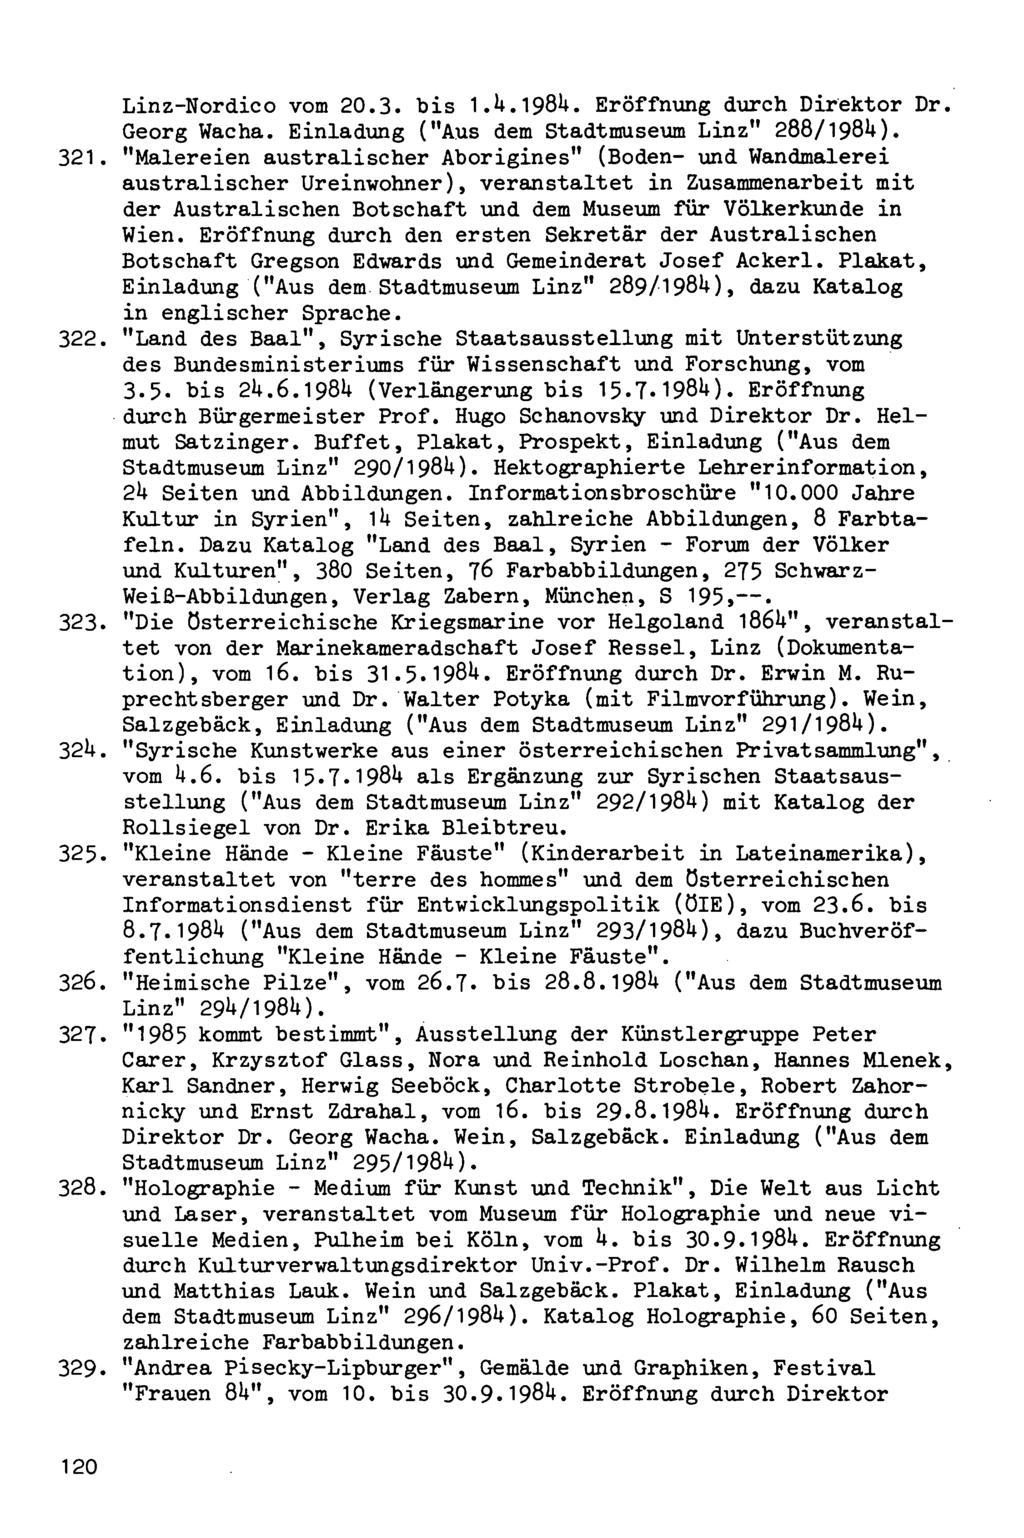 Linz-Nordico vom 20.3. bis I.U.198U. Eröffnung durch Direktor Dr. Georg Wacha. Einladung ("Aus dem Stadtmuseum Linz" 288/198U). 321.